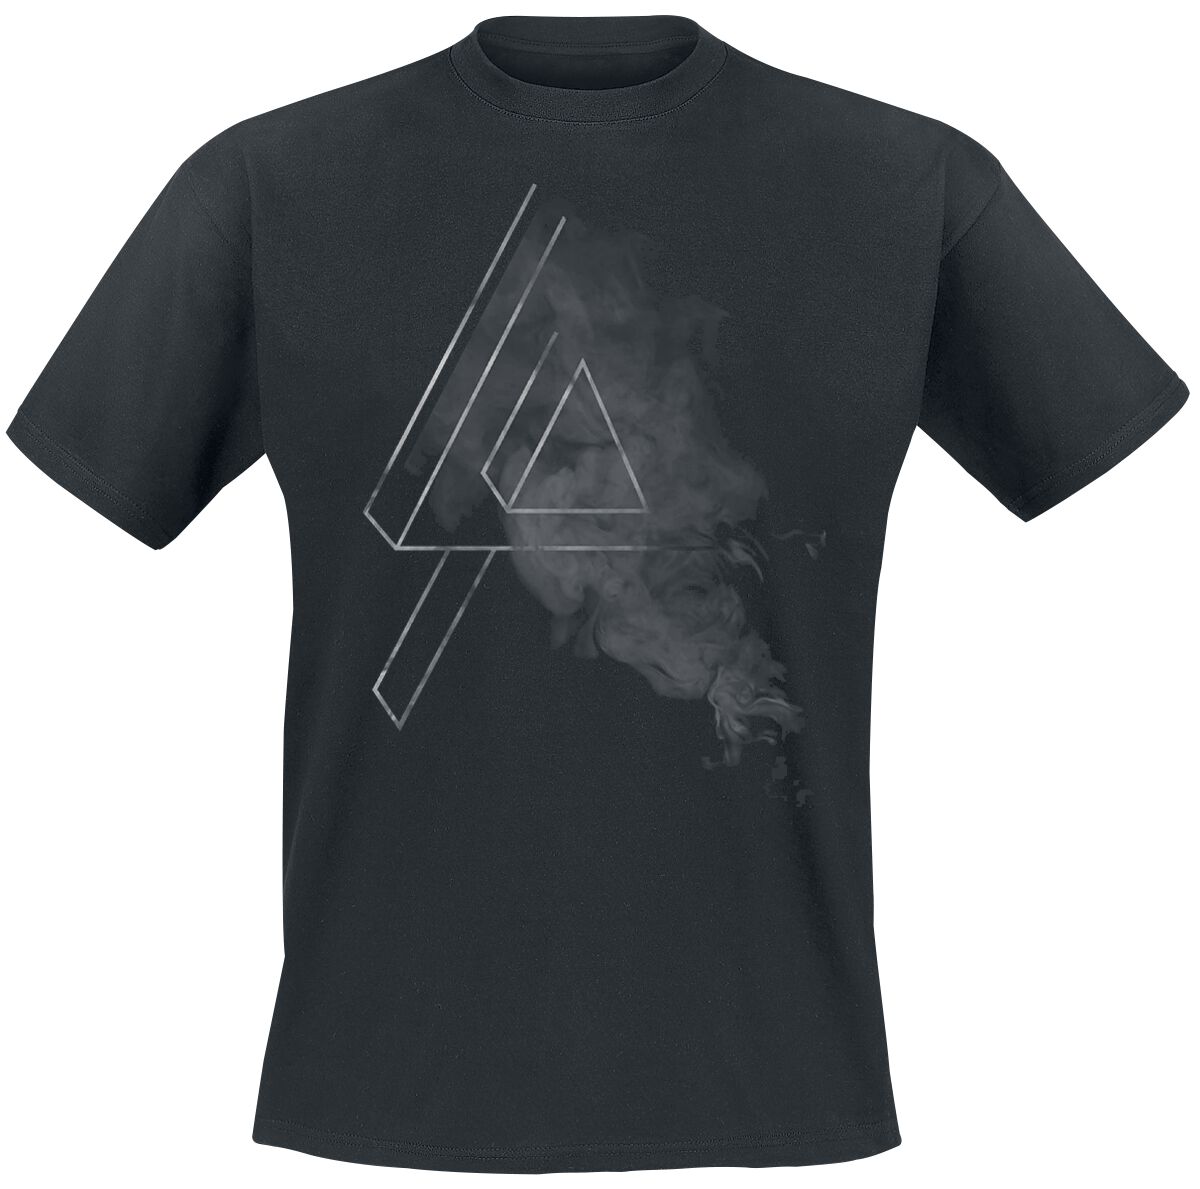 Linkin Park T-Shirt - Smoke Logo - S bis 5XL - für Männer - Größe S - schwarz  - EMP exklusives Merchandise!